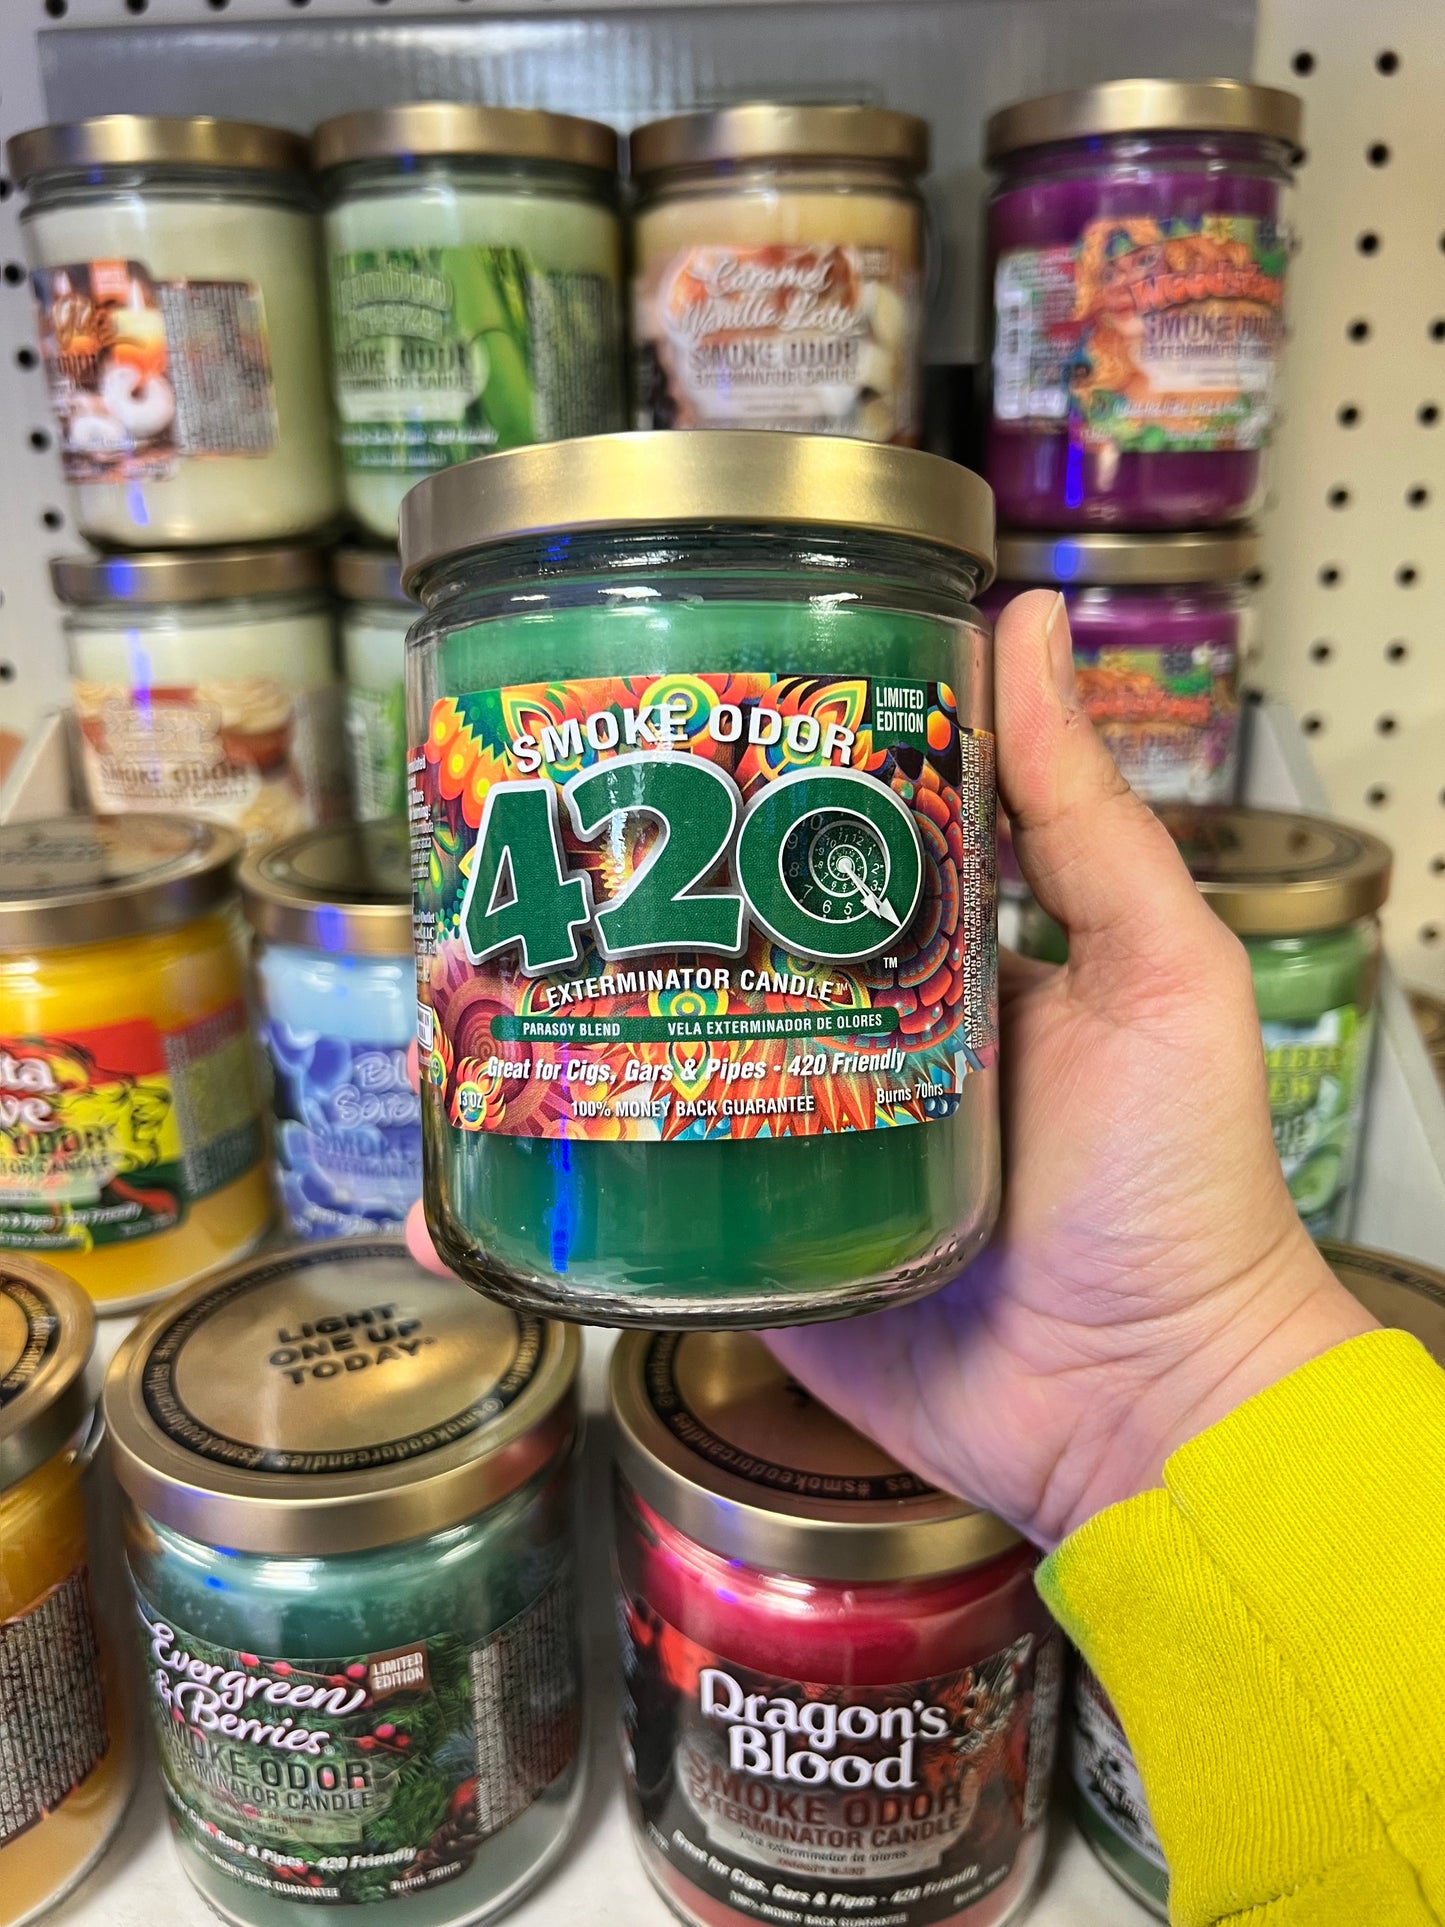 Smoke Odor Exterminator Candle 420